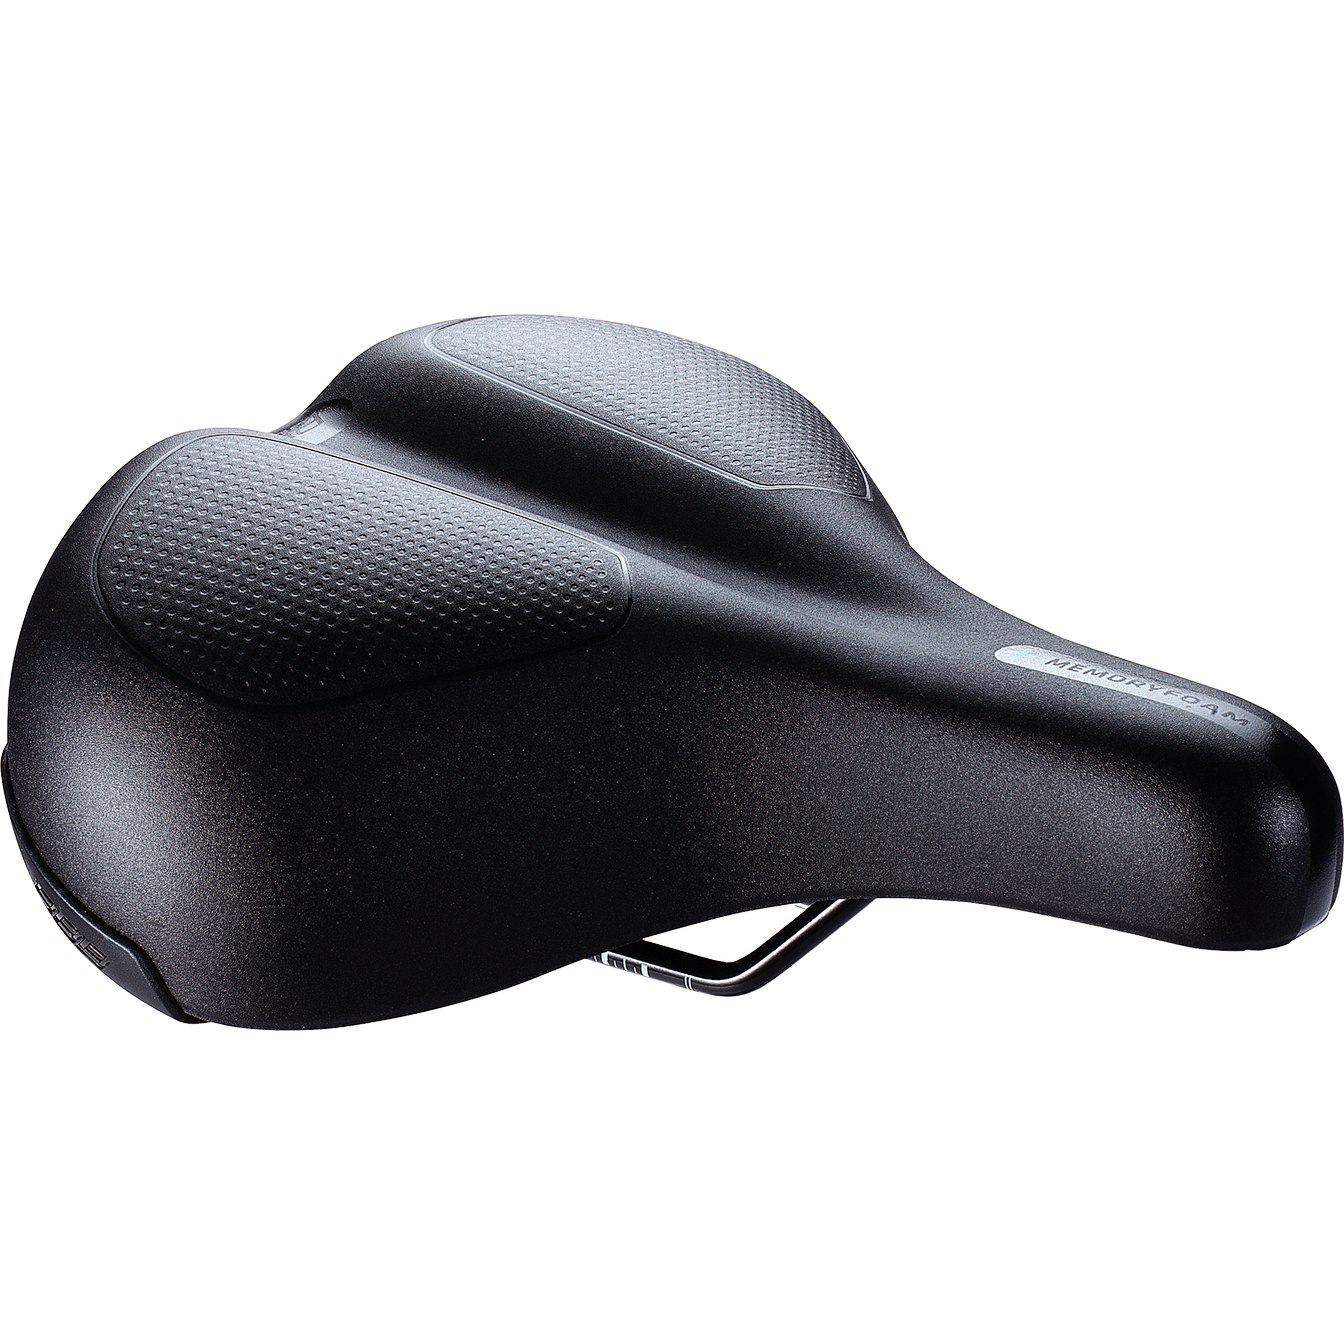 Produktbild von BBB Cycling ComfortPlus Upright BSD-106 Sattel - schwarz